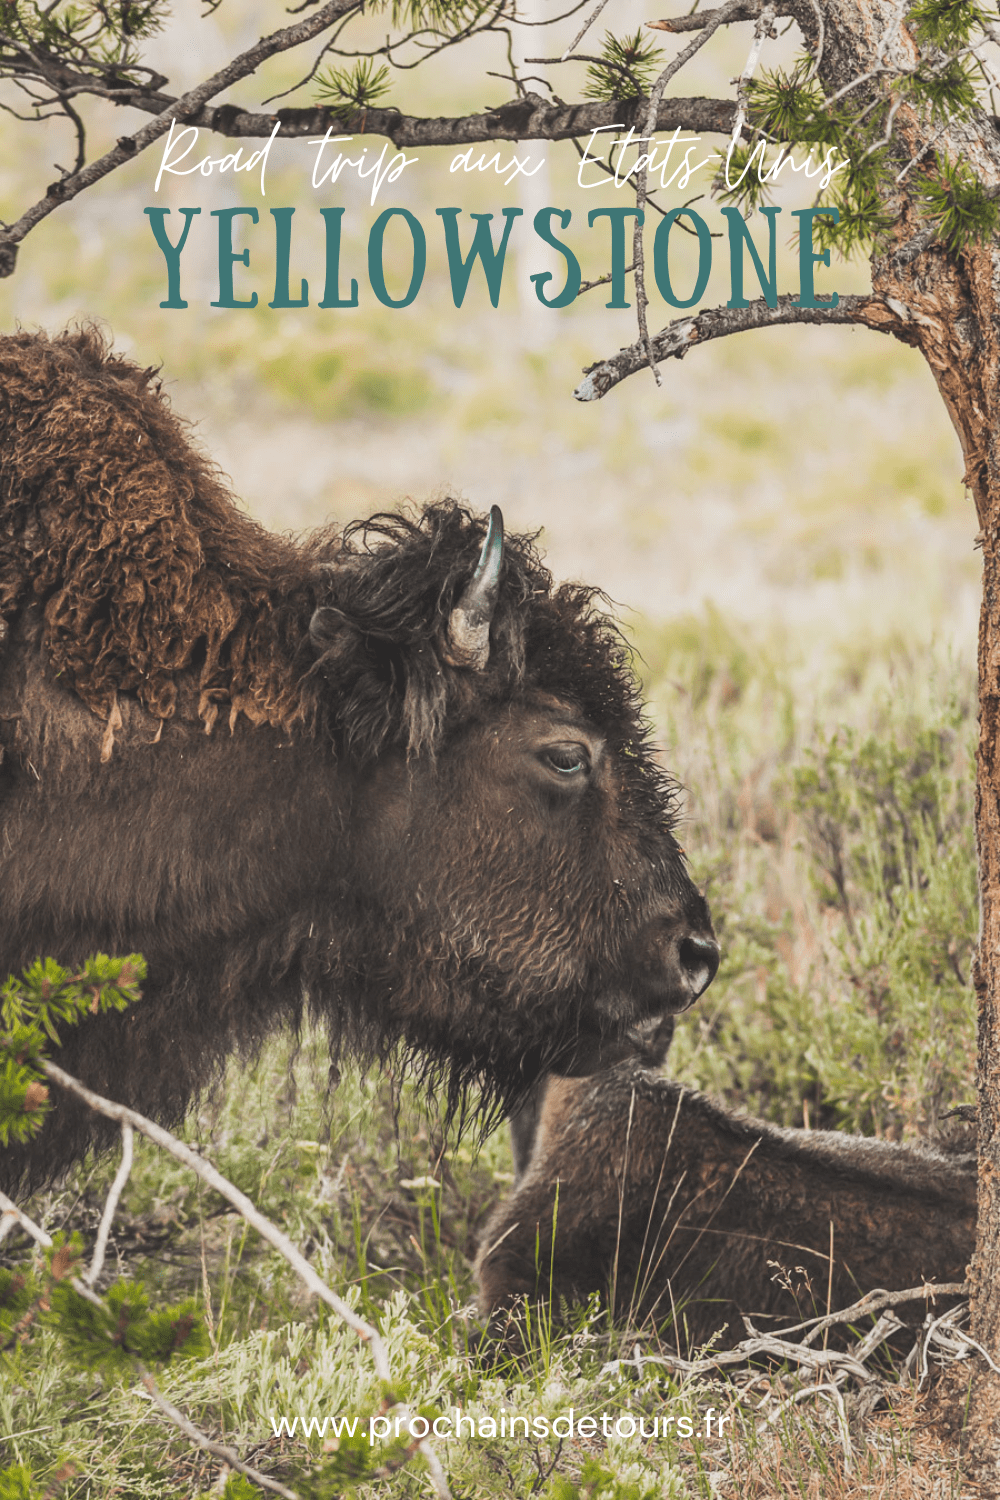 Situé aux États-Unis d'Amérique, le parc national de Yellowstone est l'une des destinations les plus impressionnantes et les plus pittoresques au monde. Bénéficiant de paysages époustouflants, allant des forêts, des geysers et des sources chaudes aux canyons et aux vastes prairies ouvertes, Yellowstone est vraiment un endroit pas comme les autres. Des incroyables opportunités d'observation de la faune aux randonnées, il y a quelque chose pour tous dans le parc national de Yellowstone.